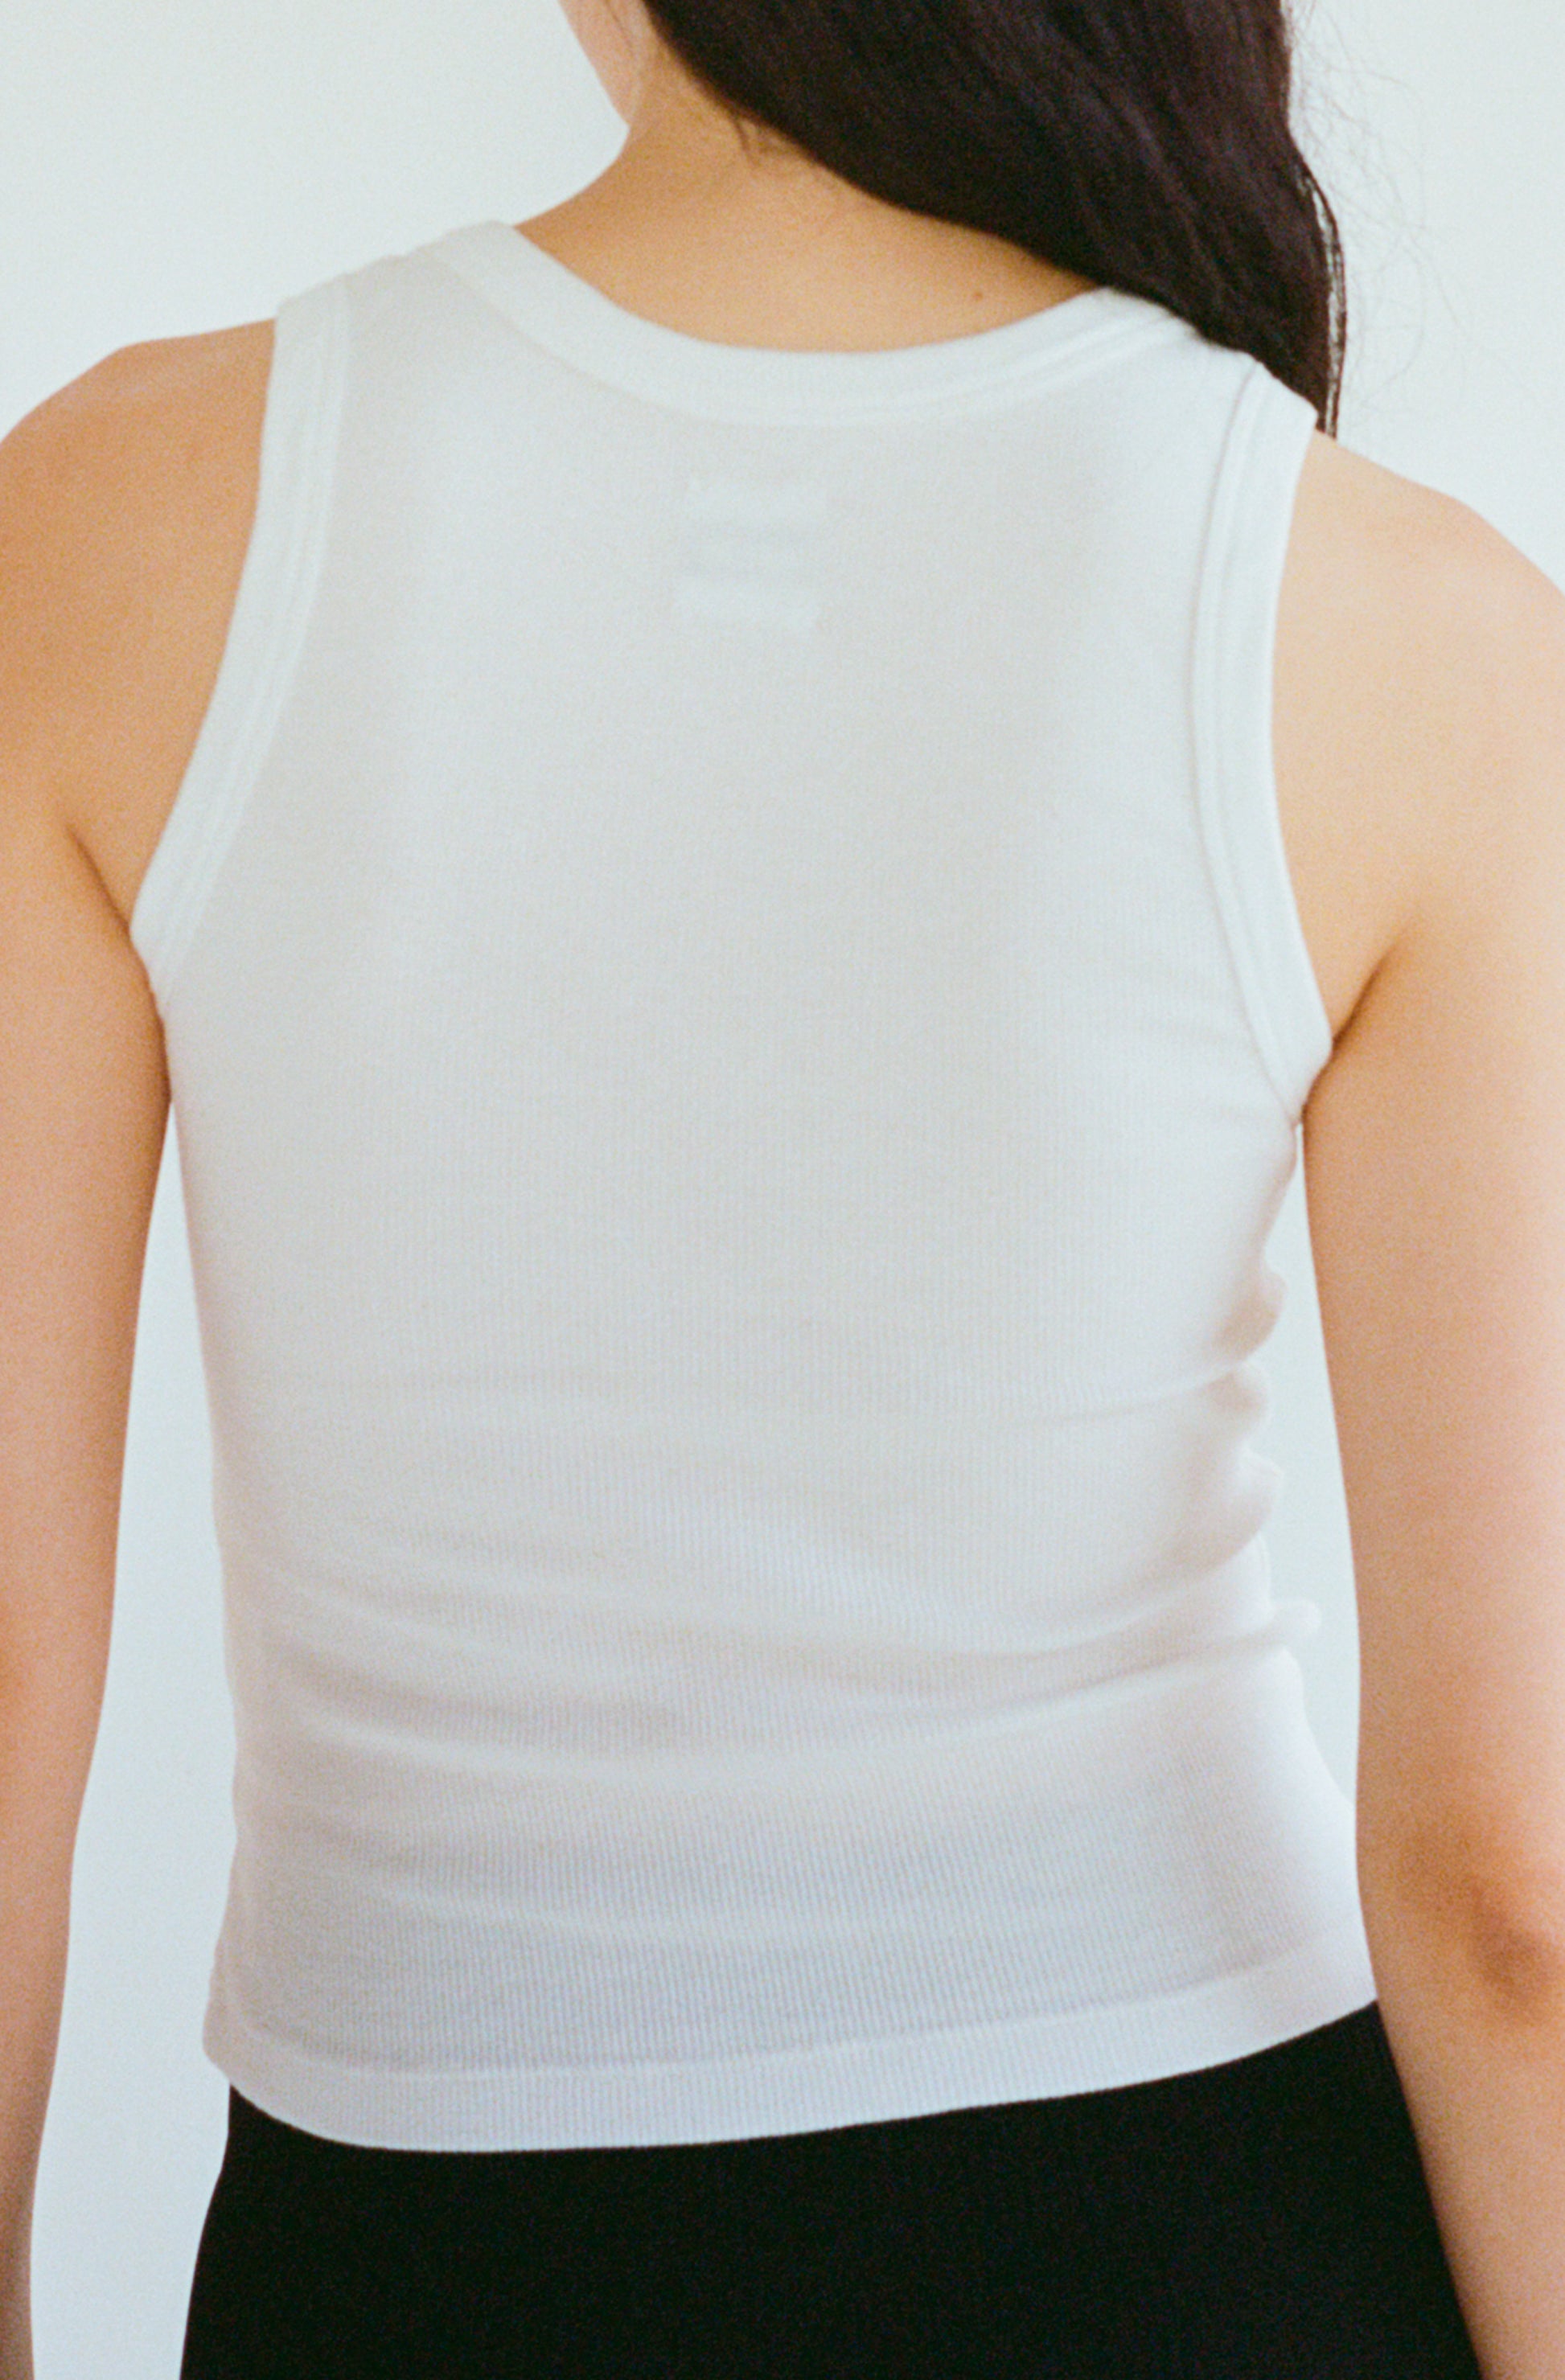 Le débardeur blanc en coton bio pour femme coupe près du corps OMEAR, vue portée de dos